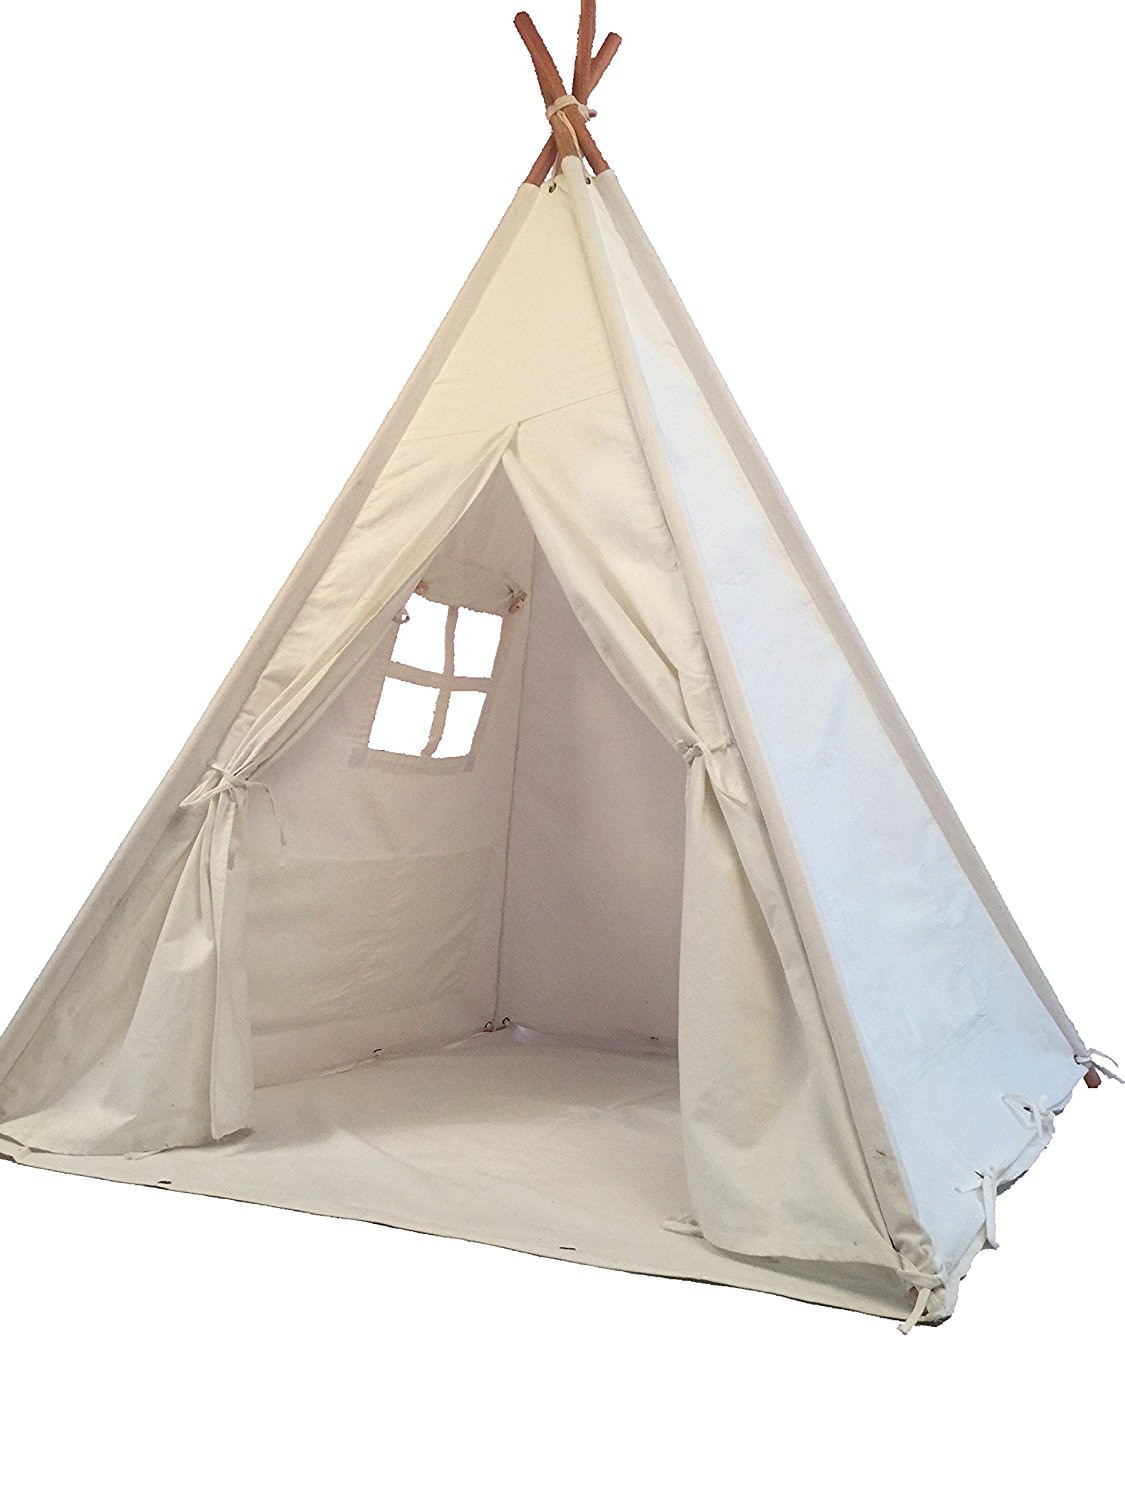 Kids Indoor Tent
 Pericross Kids Teepee Tent Indian Play Tent Children s